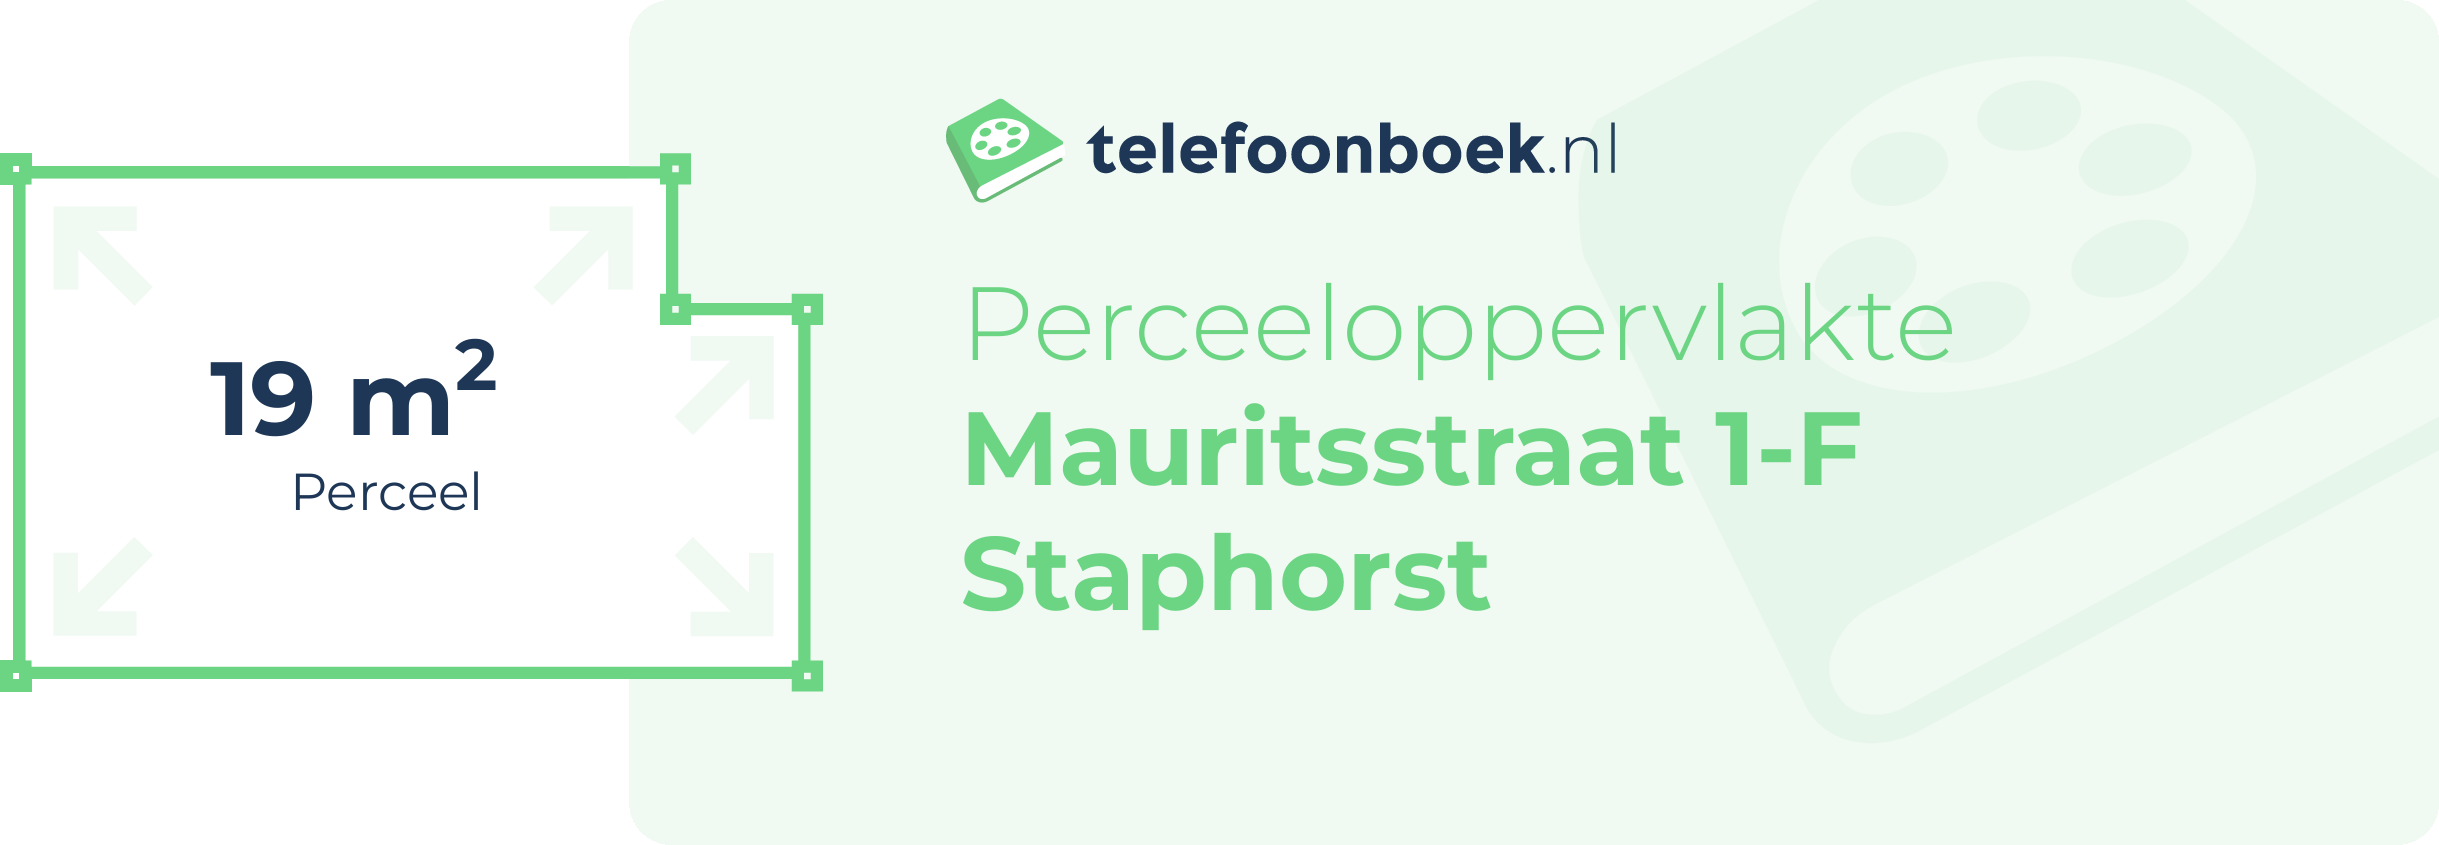 Perceeloppervlakte Mauritsstraat 1-F Staphorst